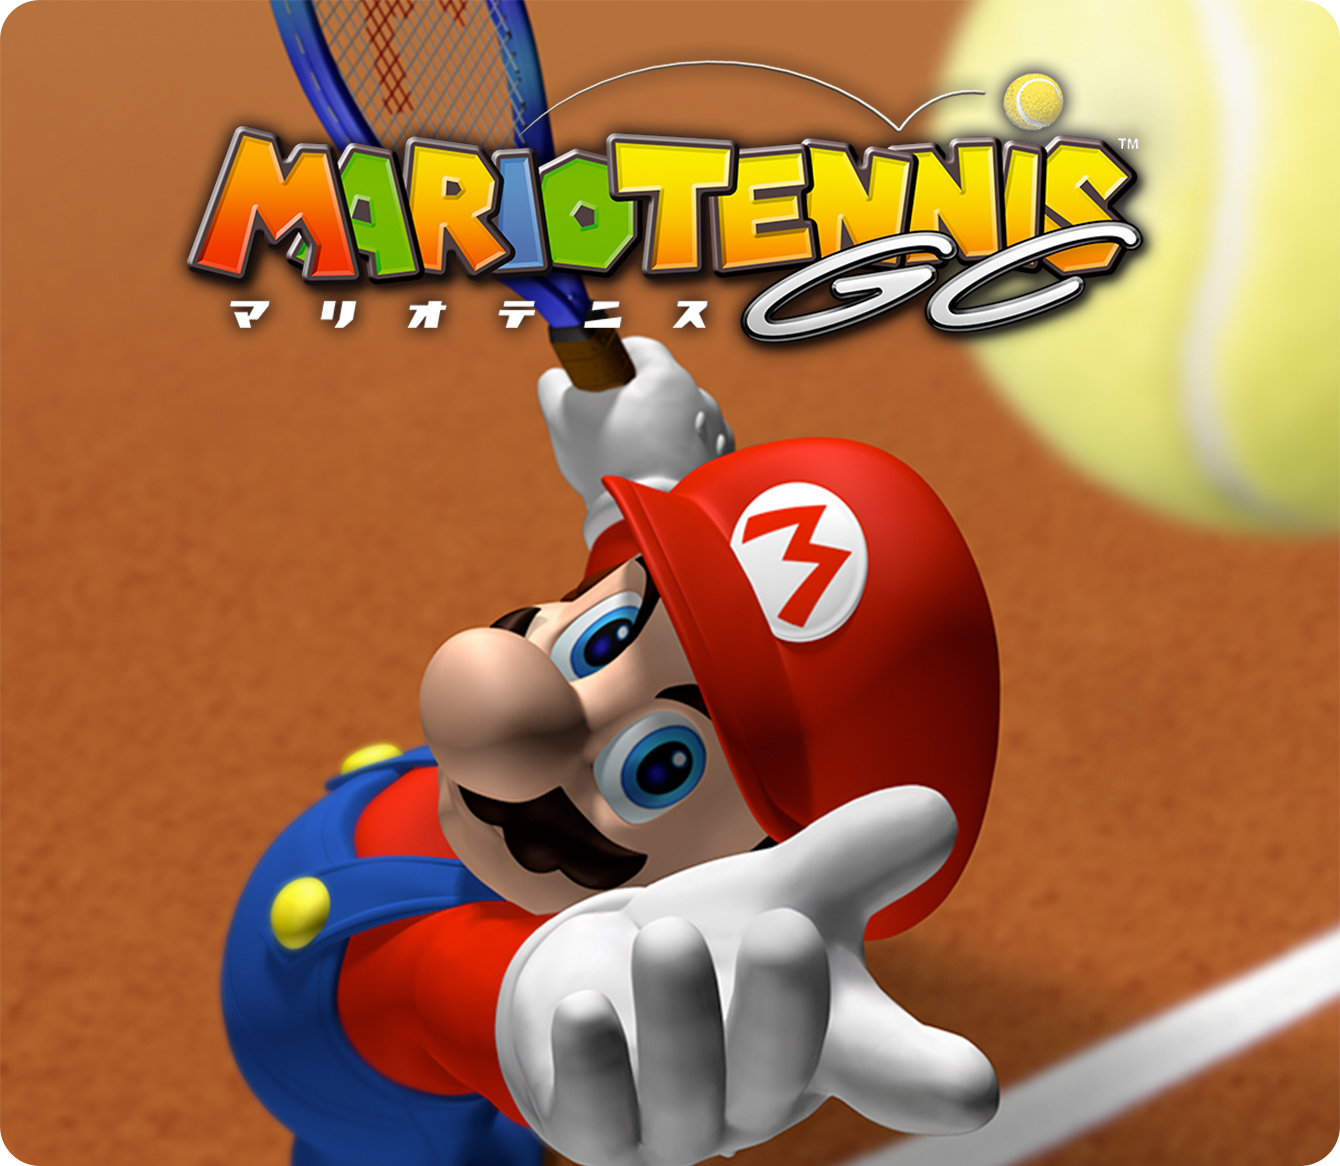 マリオテニスGC | ゲームアーカイブ | マリオポータル | Nintendo